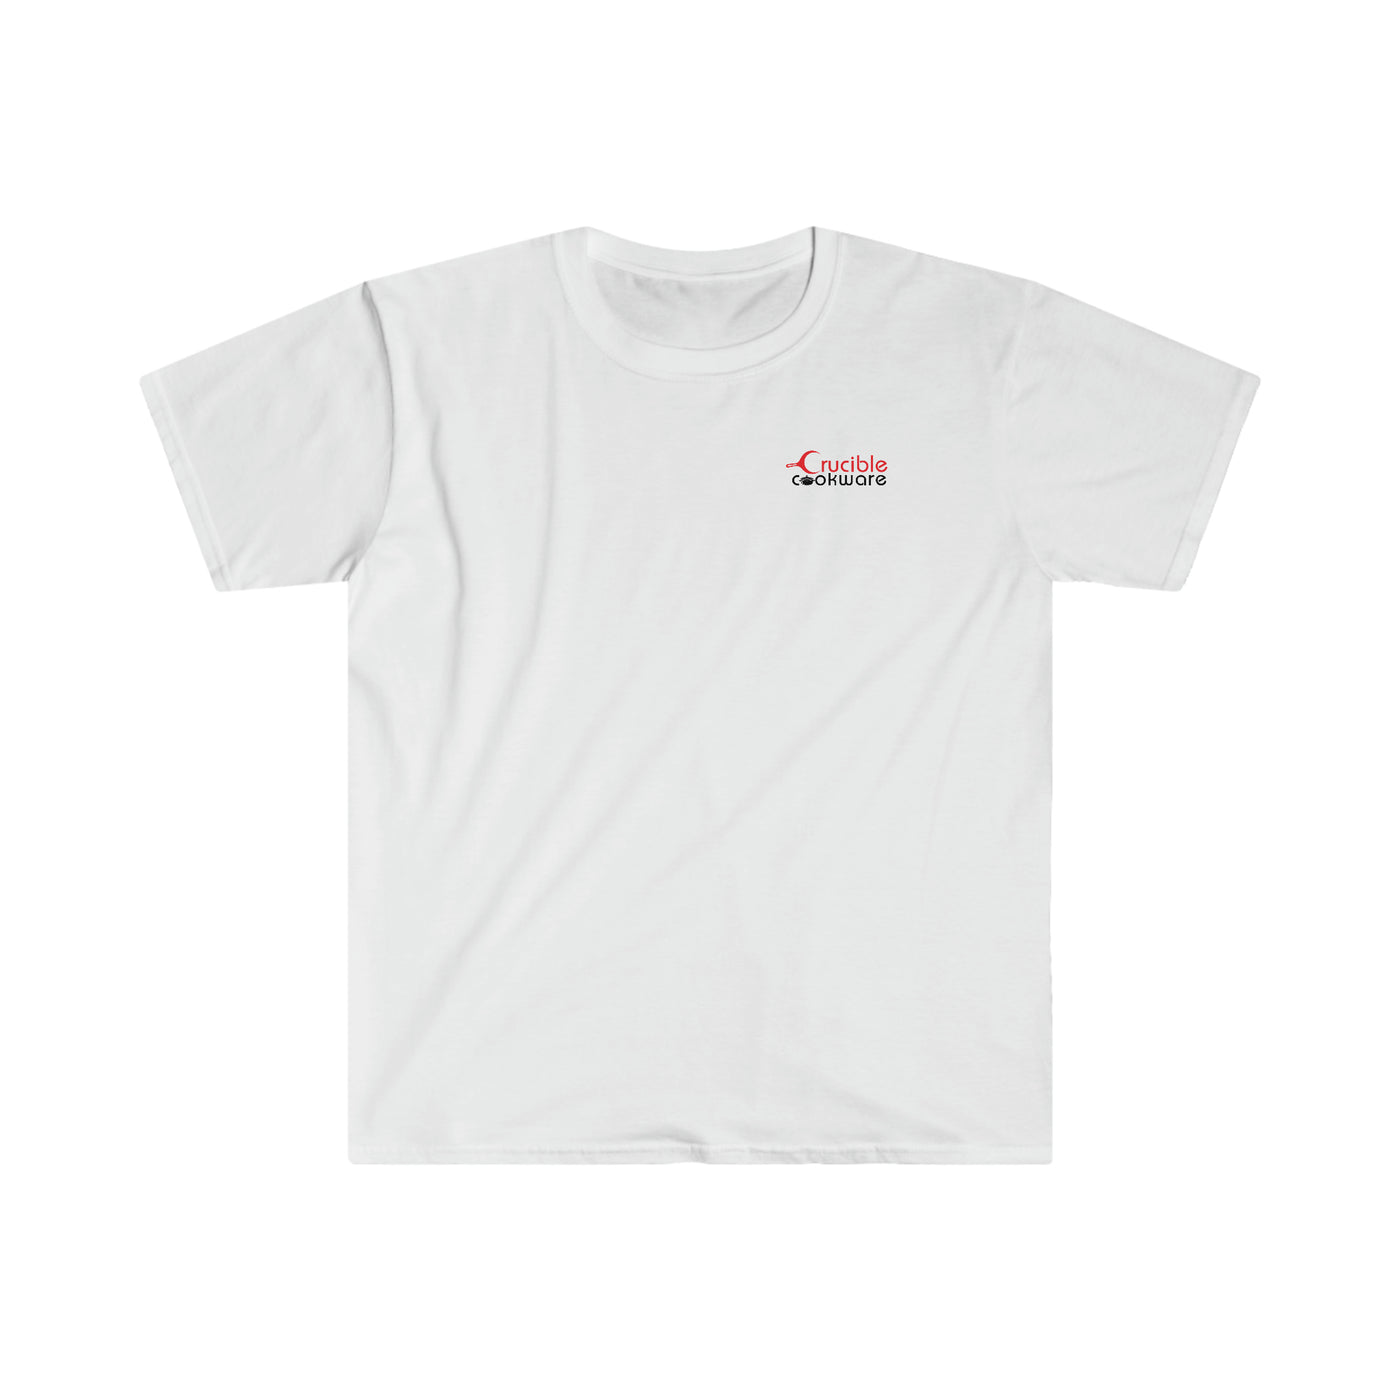 Unisex T-skjorte i myk stil